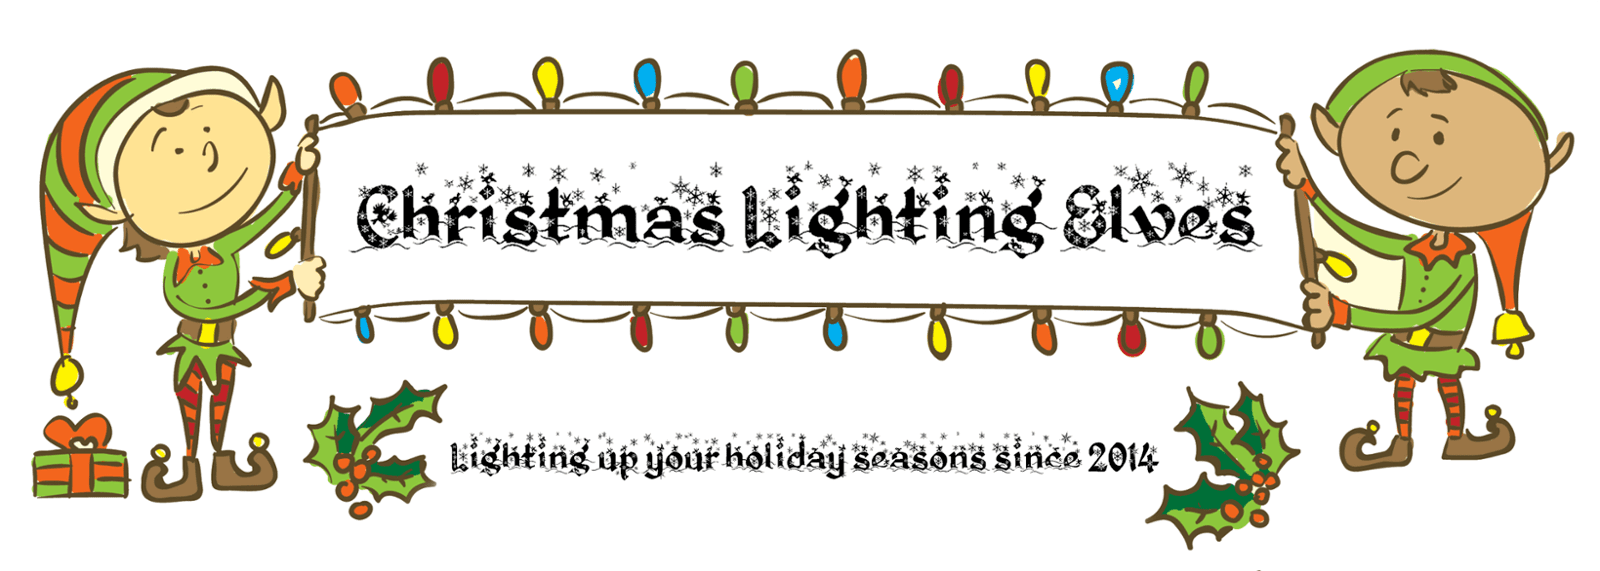 Christmas Lighting Elves